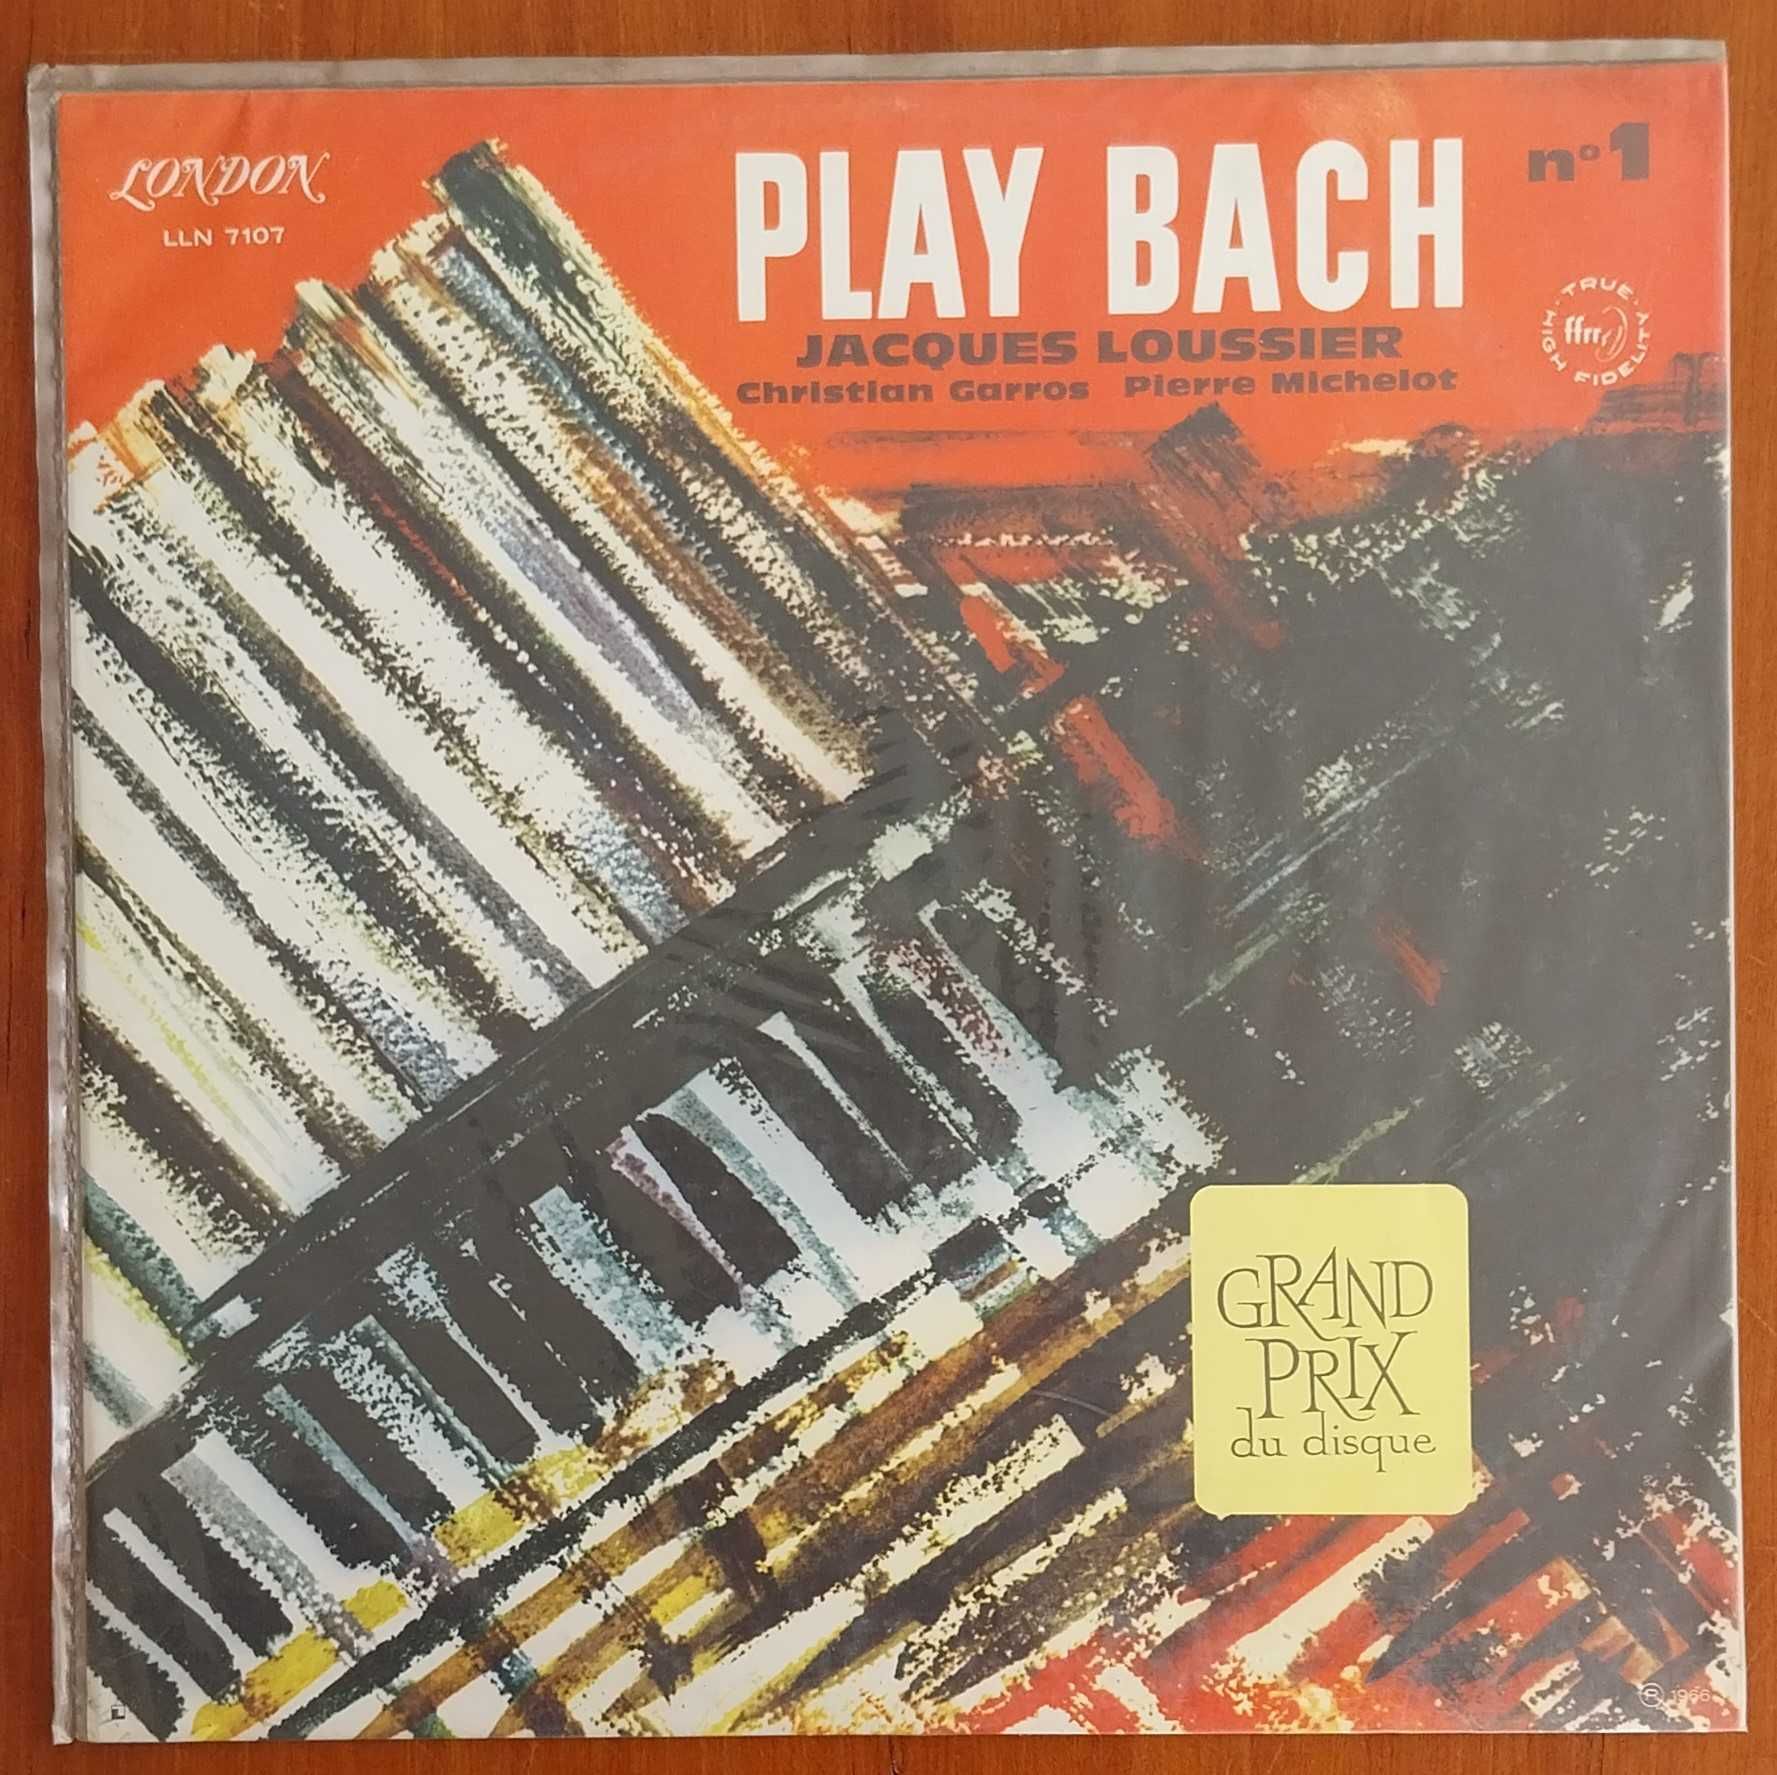 vinil: Jacques Loussier “Play Bach”